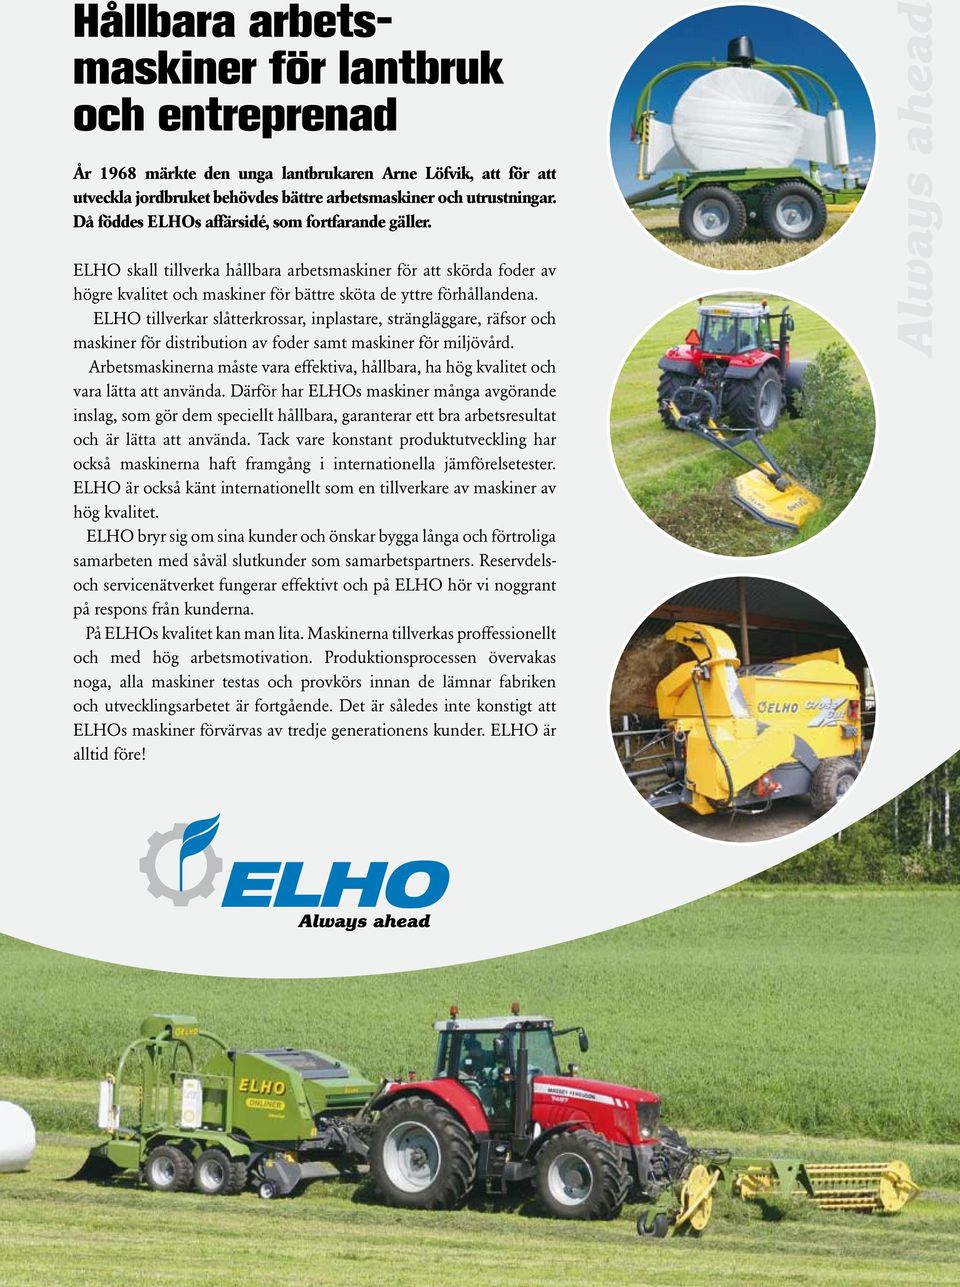 ELHO tillverkar slåtterkrossar, inplastare, strängläggare, räfsor och maskiner för distribution av foder samt maskiner för miljövård.